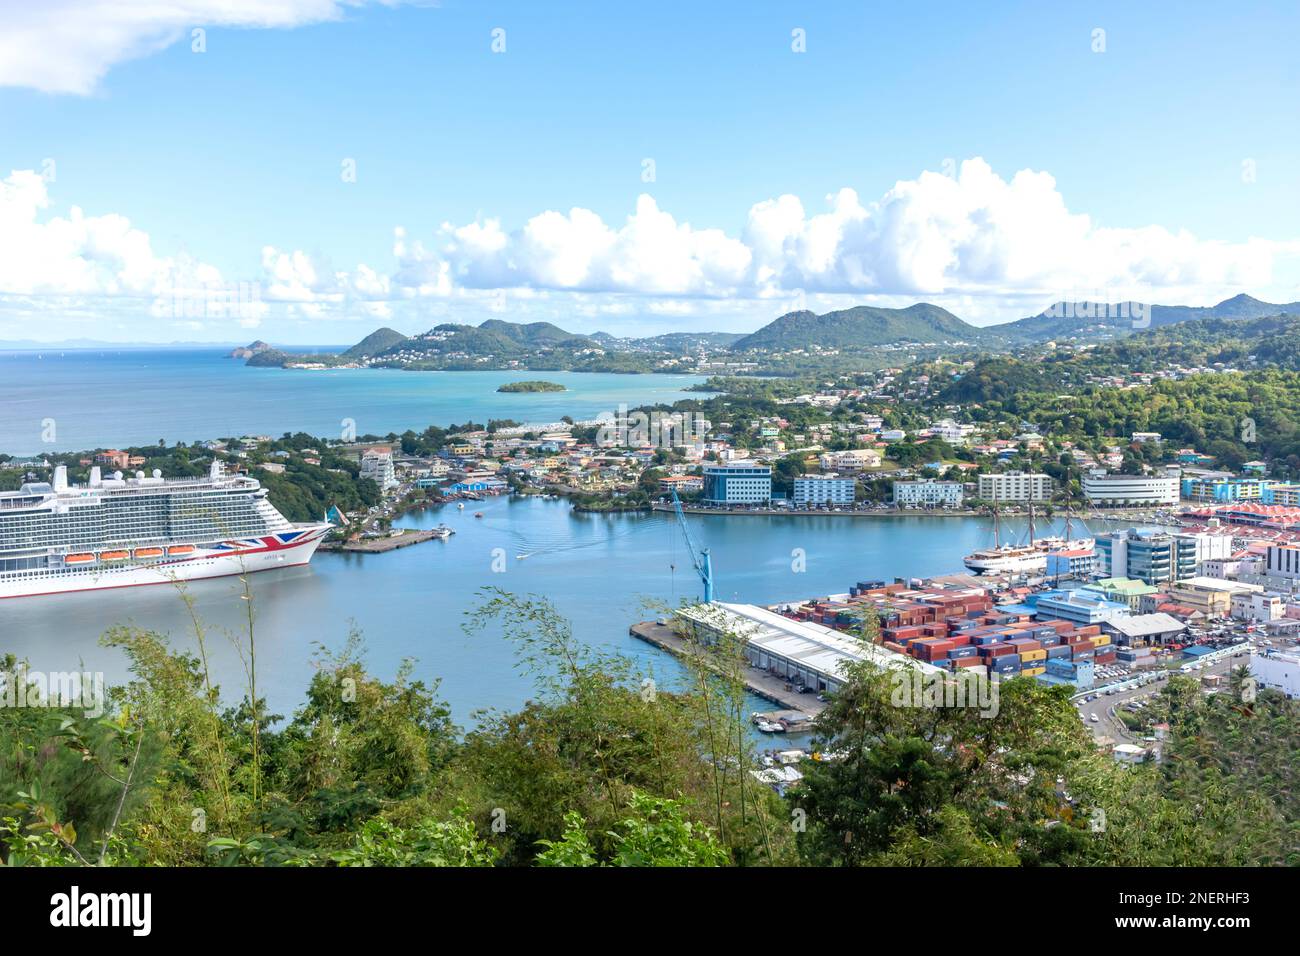 Blick auf die Stadt vom Morne Fortune Lookout mit P&O Arvia Kreuzfahrtschiff, Caangi, Saint Lucia, Kleinen Antillen, Karibik Stockfoto